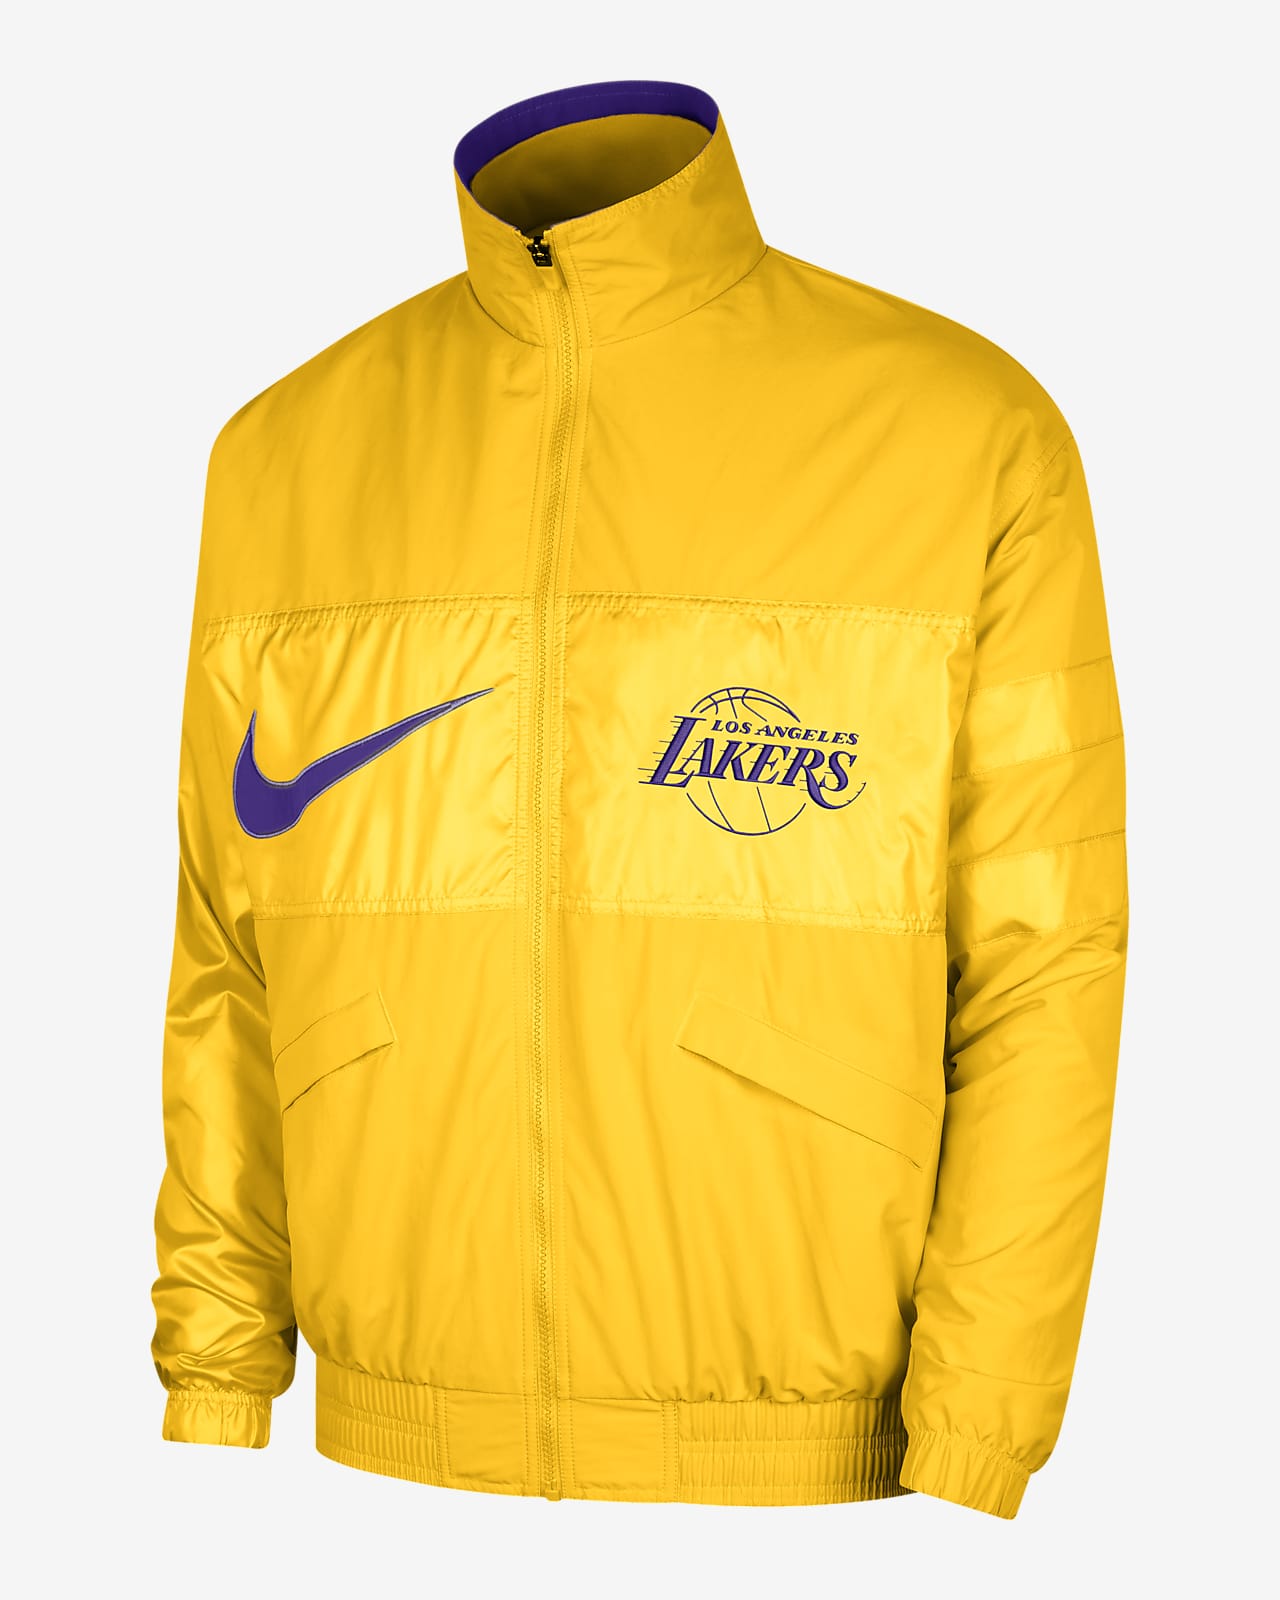 vergelijking Diversen Heb geleerd Los Angeles Lakers Courtside Men's Nike NBA Lightweight Jacket. Nike.com